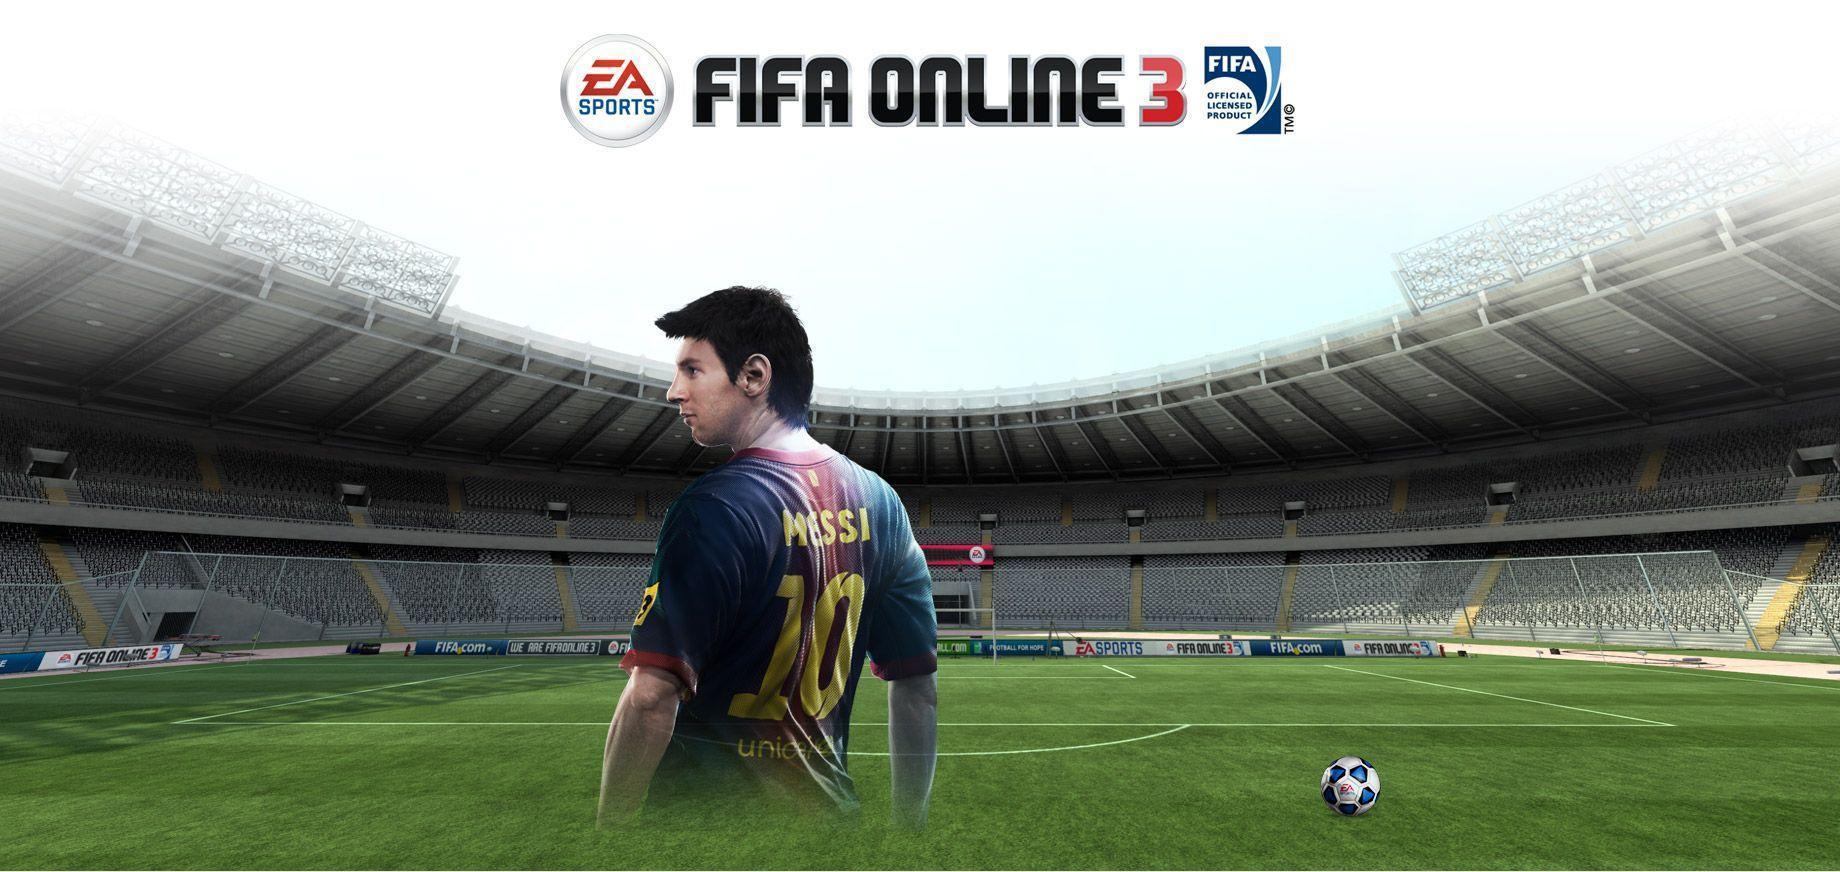 Hướng dẫn cài đặt game bóng đá FIFA Online 3 với 3 em chân dài